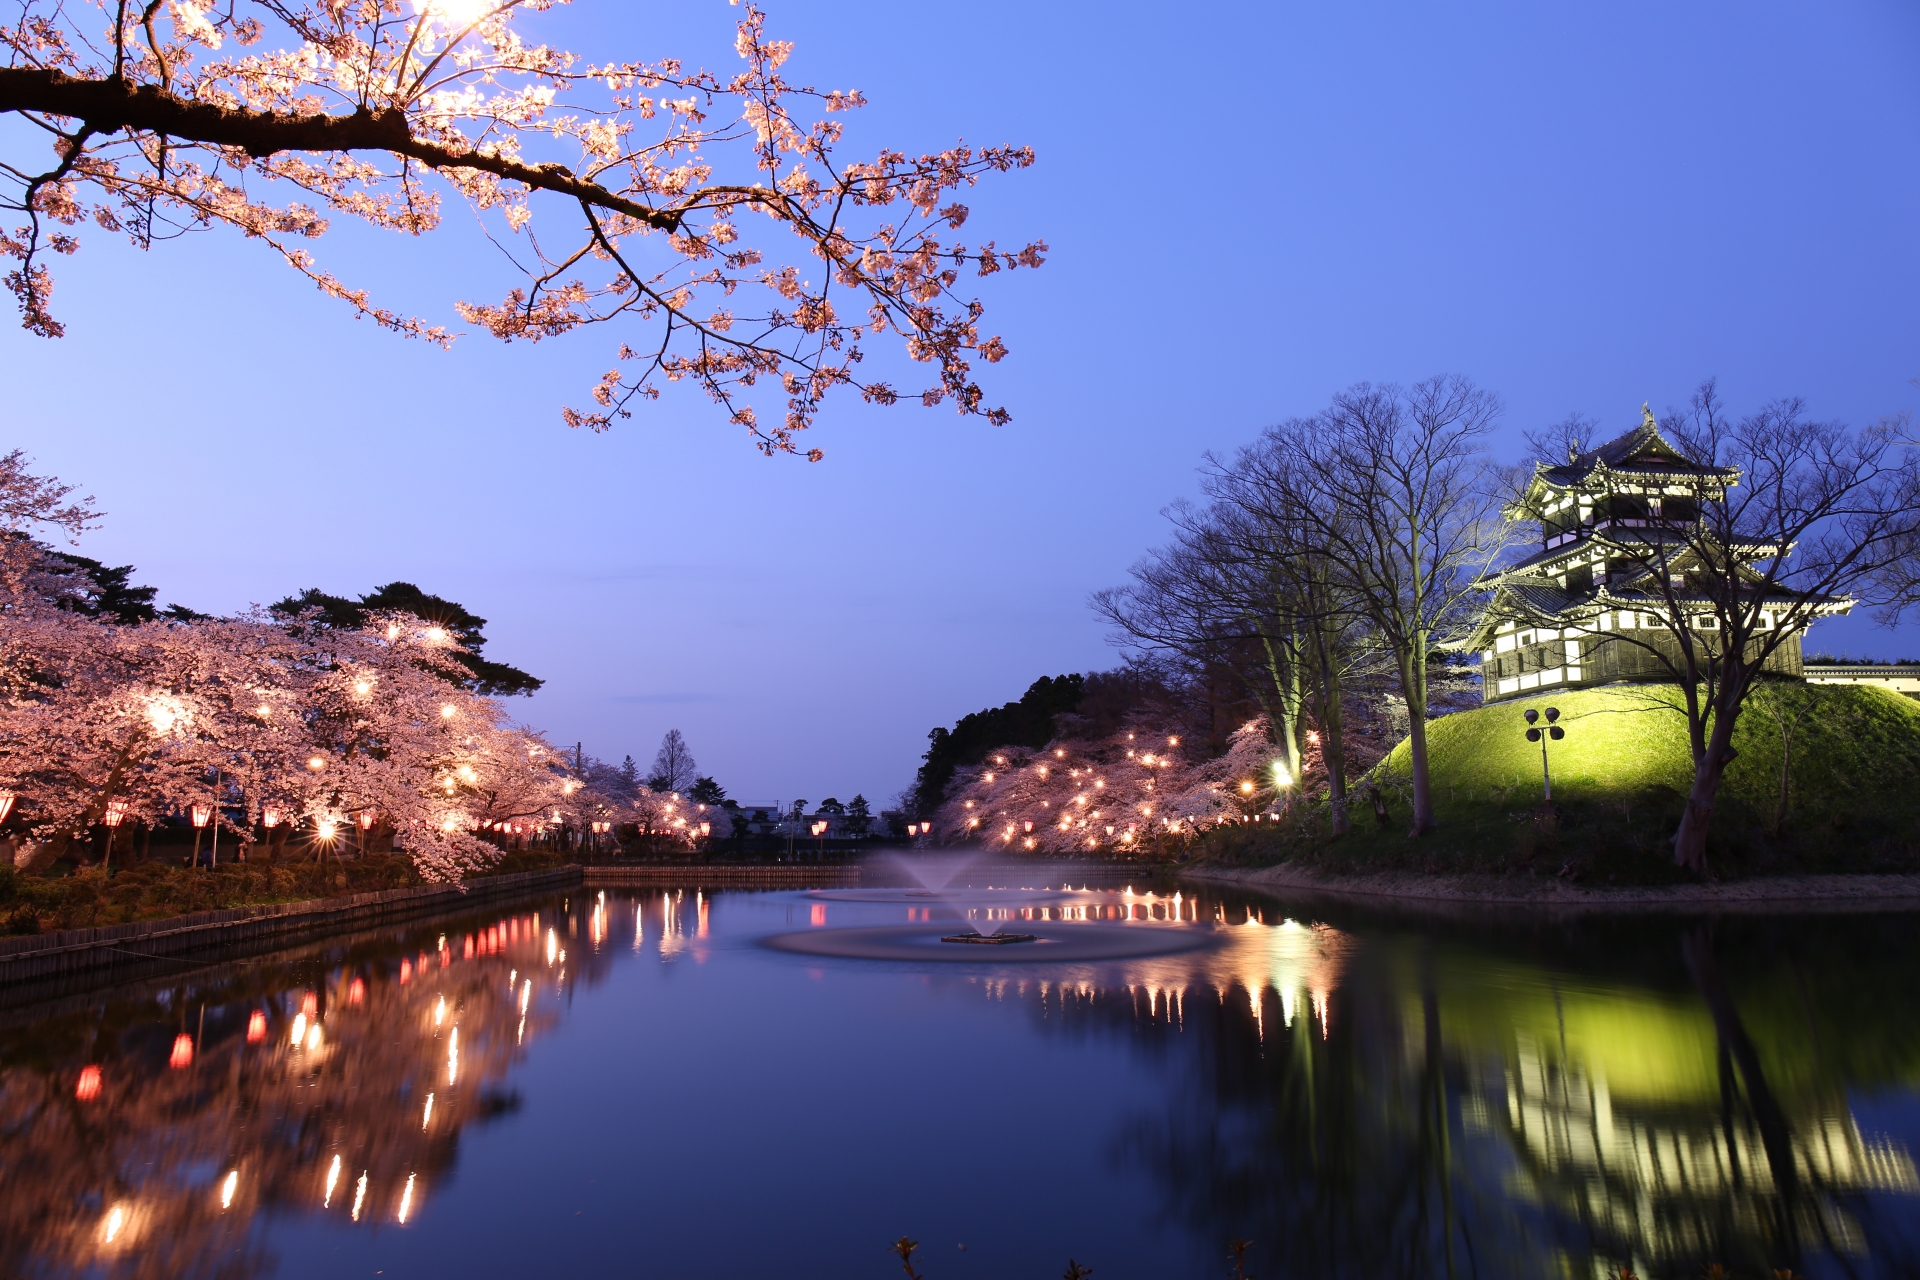 新潟にも桜の季節がやってきました。今回は日本三大夜桜の高田城址公園の夜桜のご紹介です。